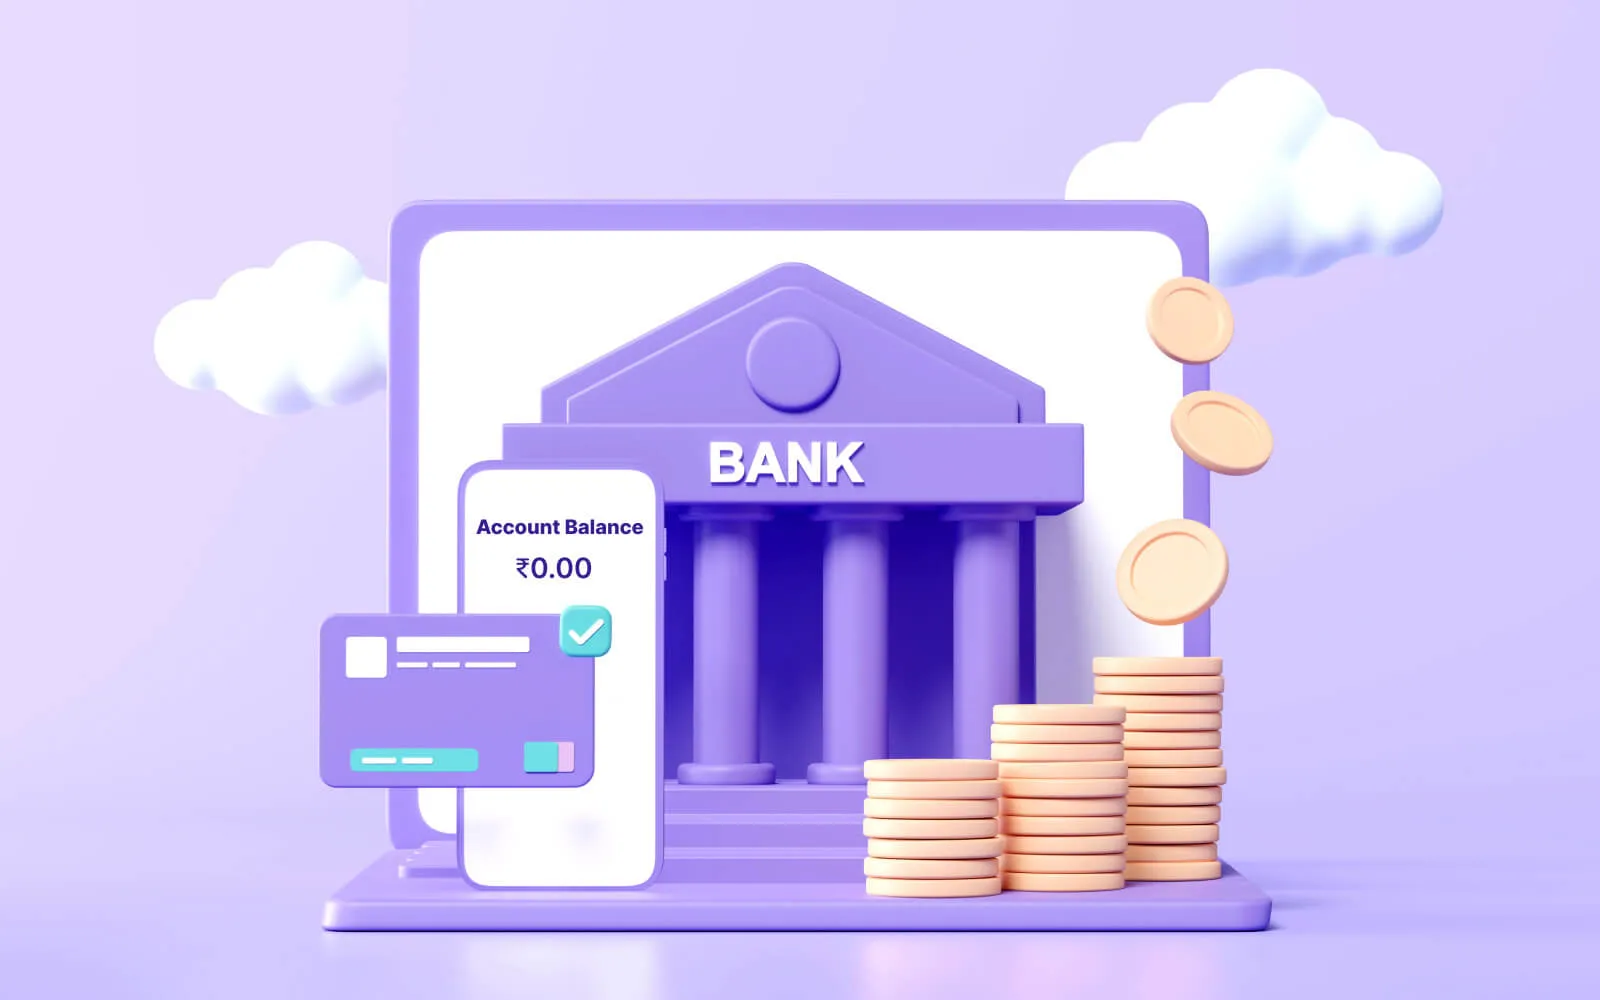 Account trong lĩnh vực ngân hàng được biết đến là Bank Account